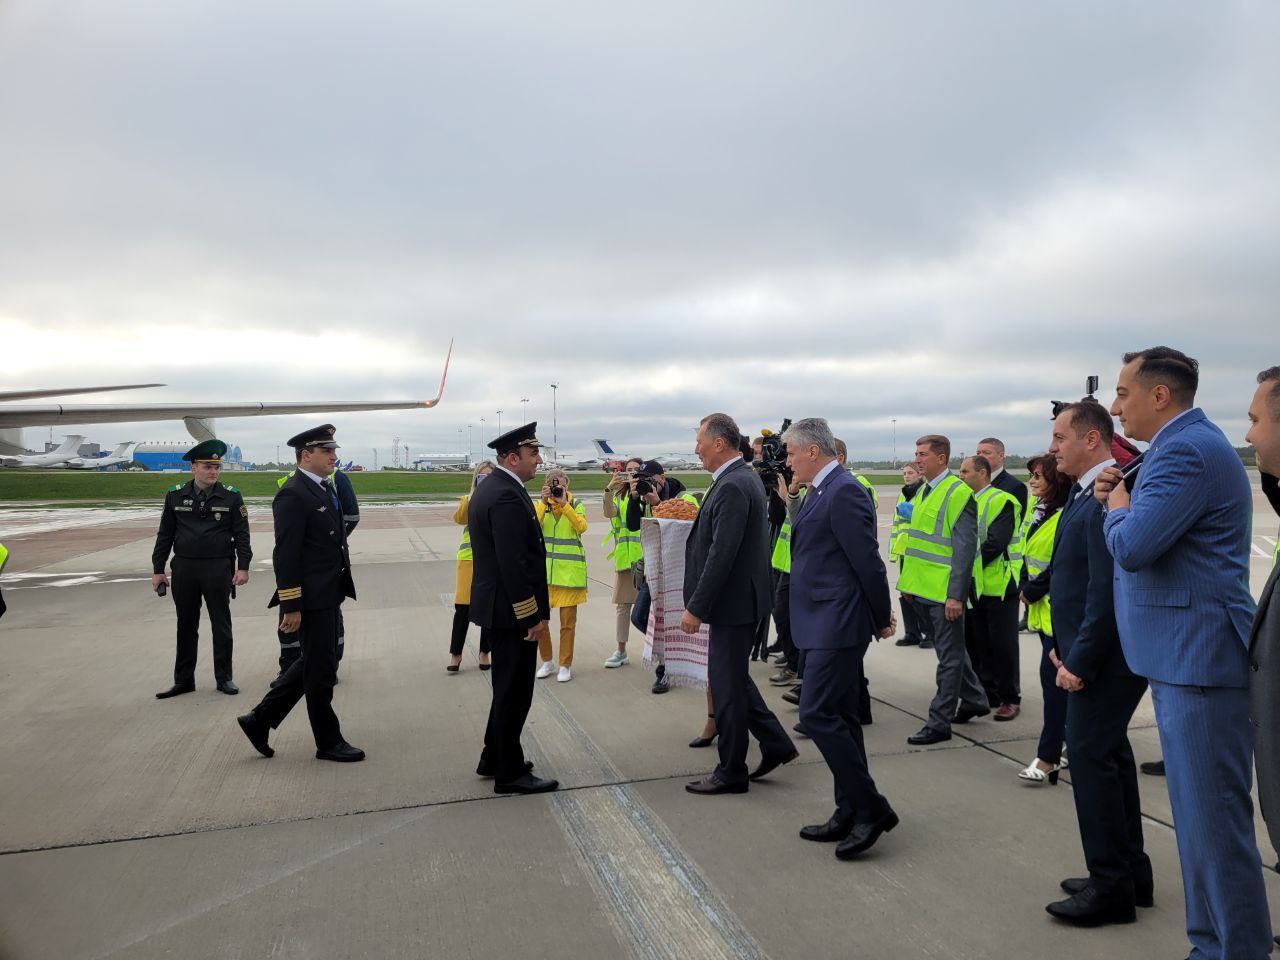 "Азербайджанские авиалинии" начали летать между Минском и Баку